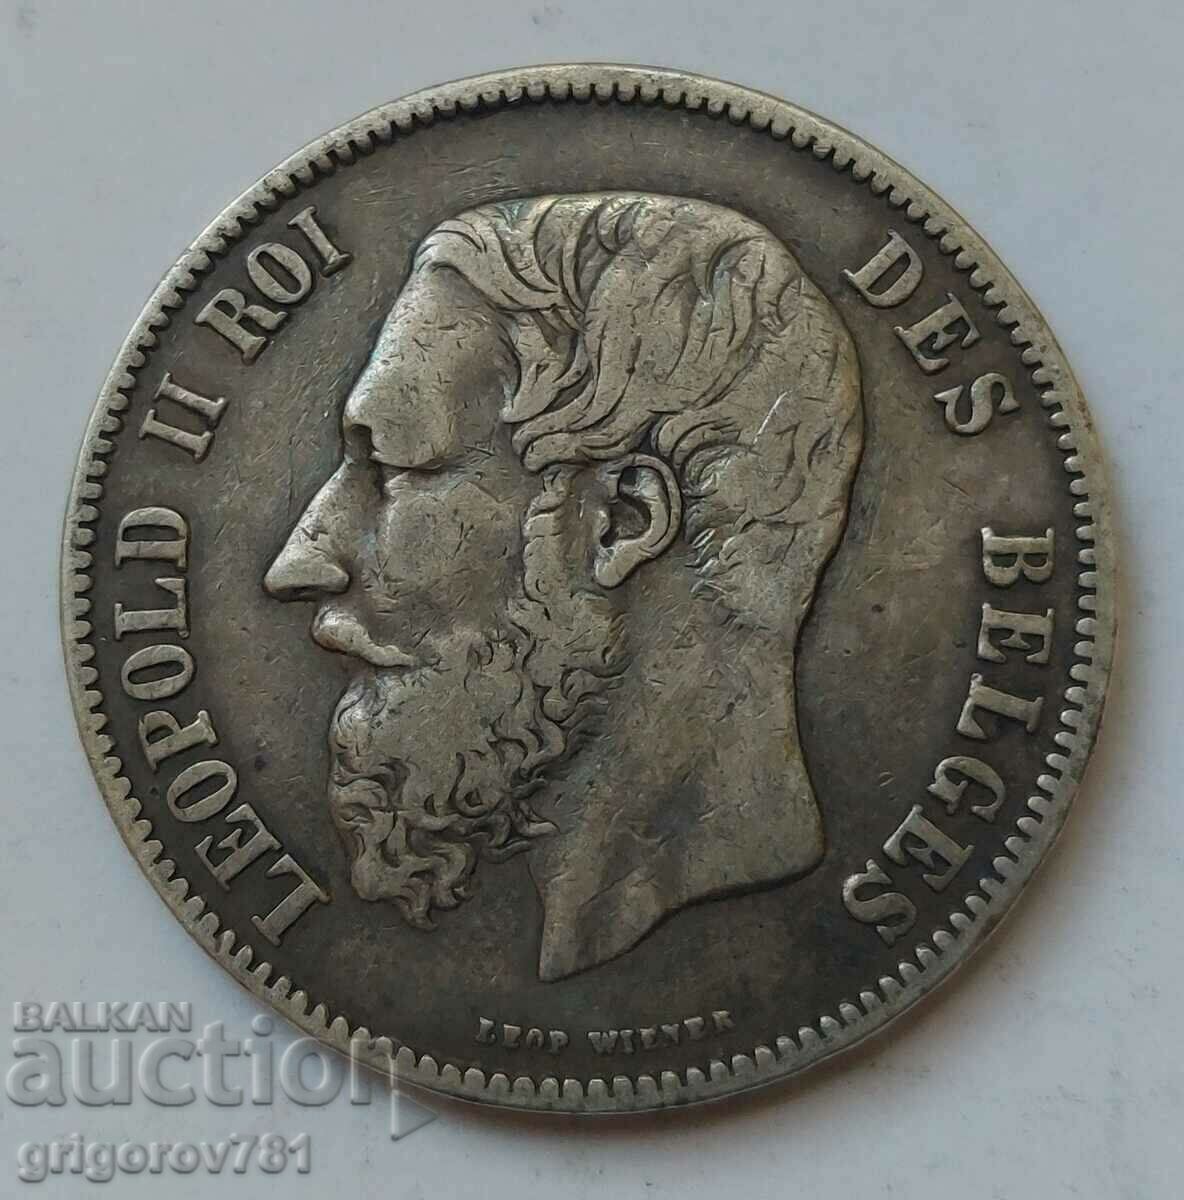 5 Francs Silver Belgium 1869 - Silver Coin #226